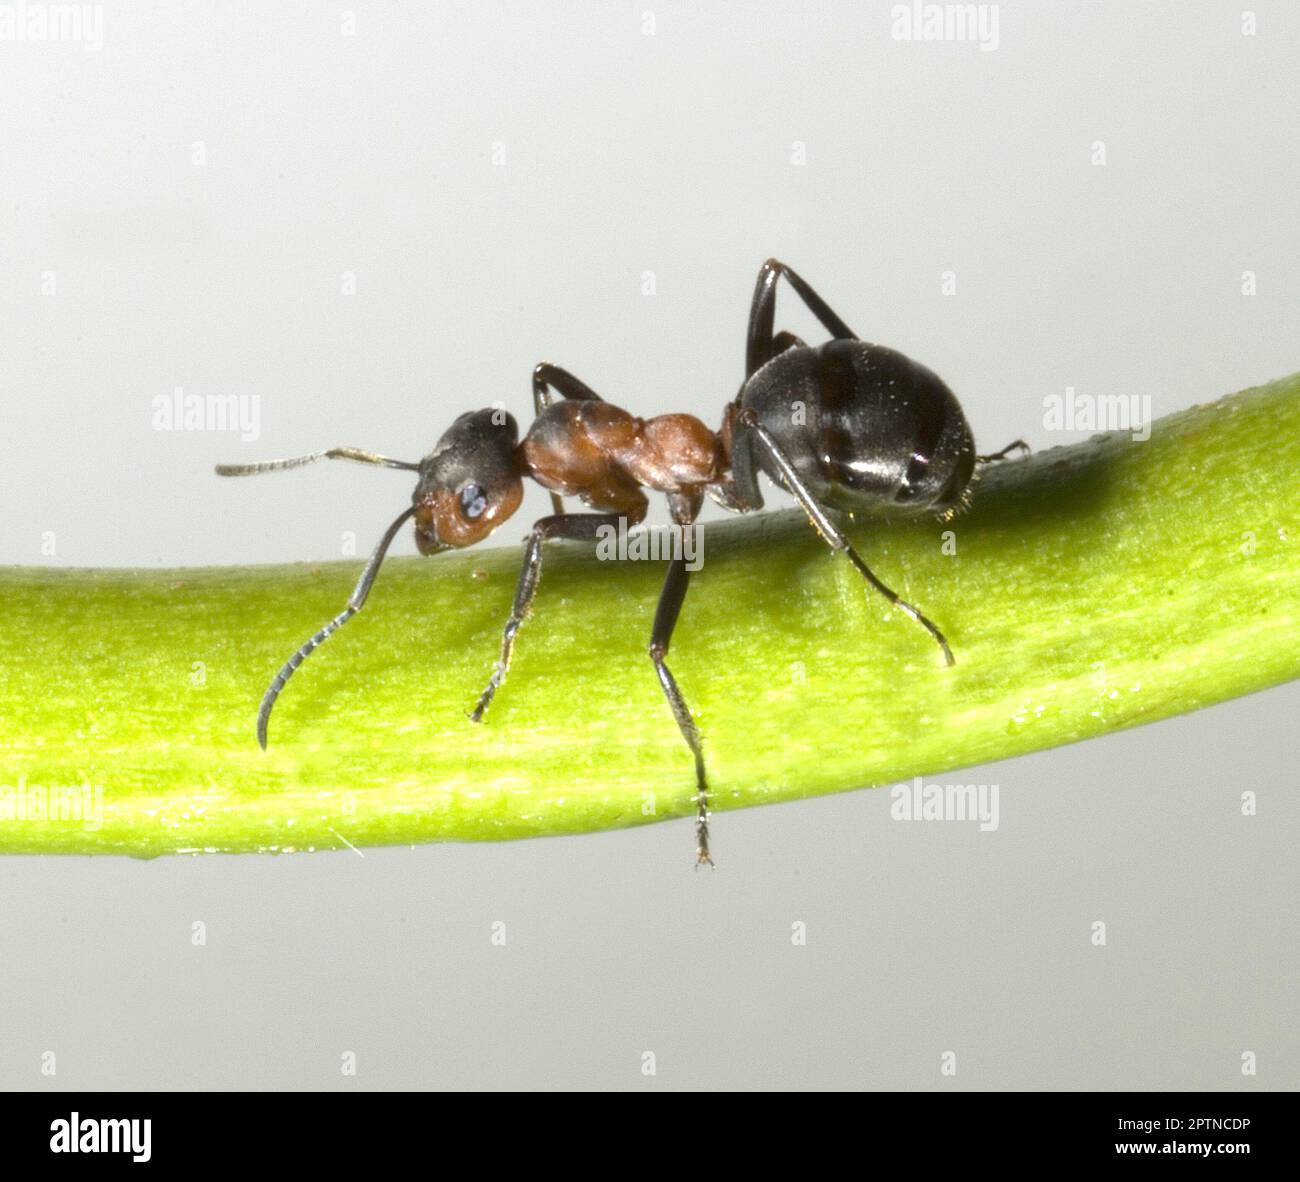 Fila de hormigas fotografías e imágenes de alta resolución - Página 5 -  Alamy